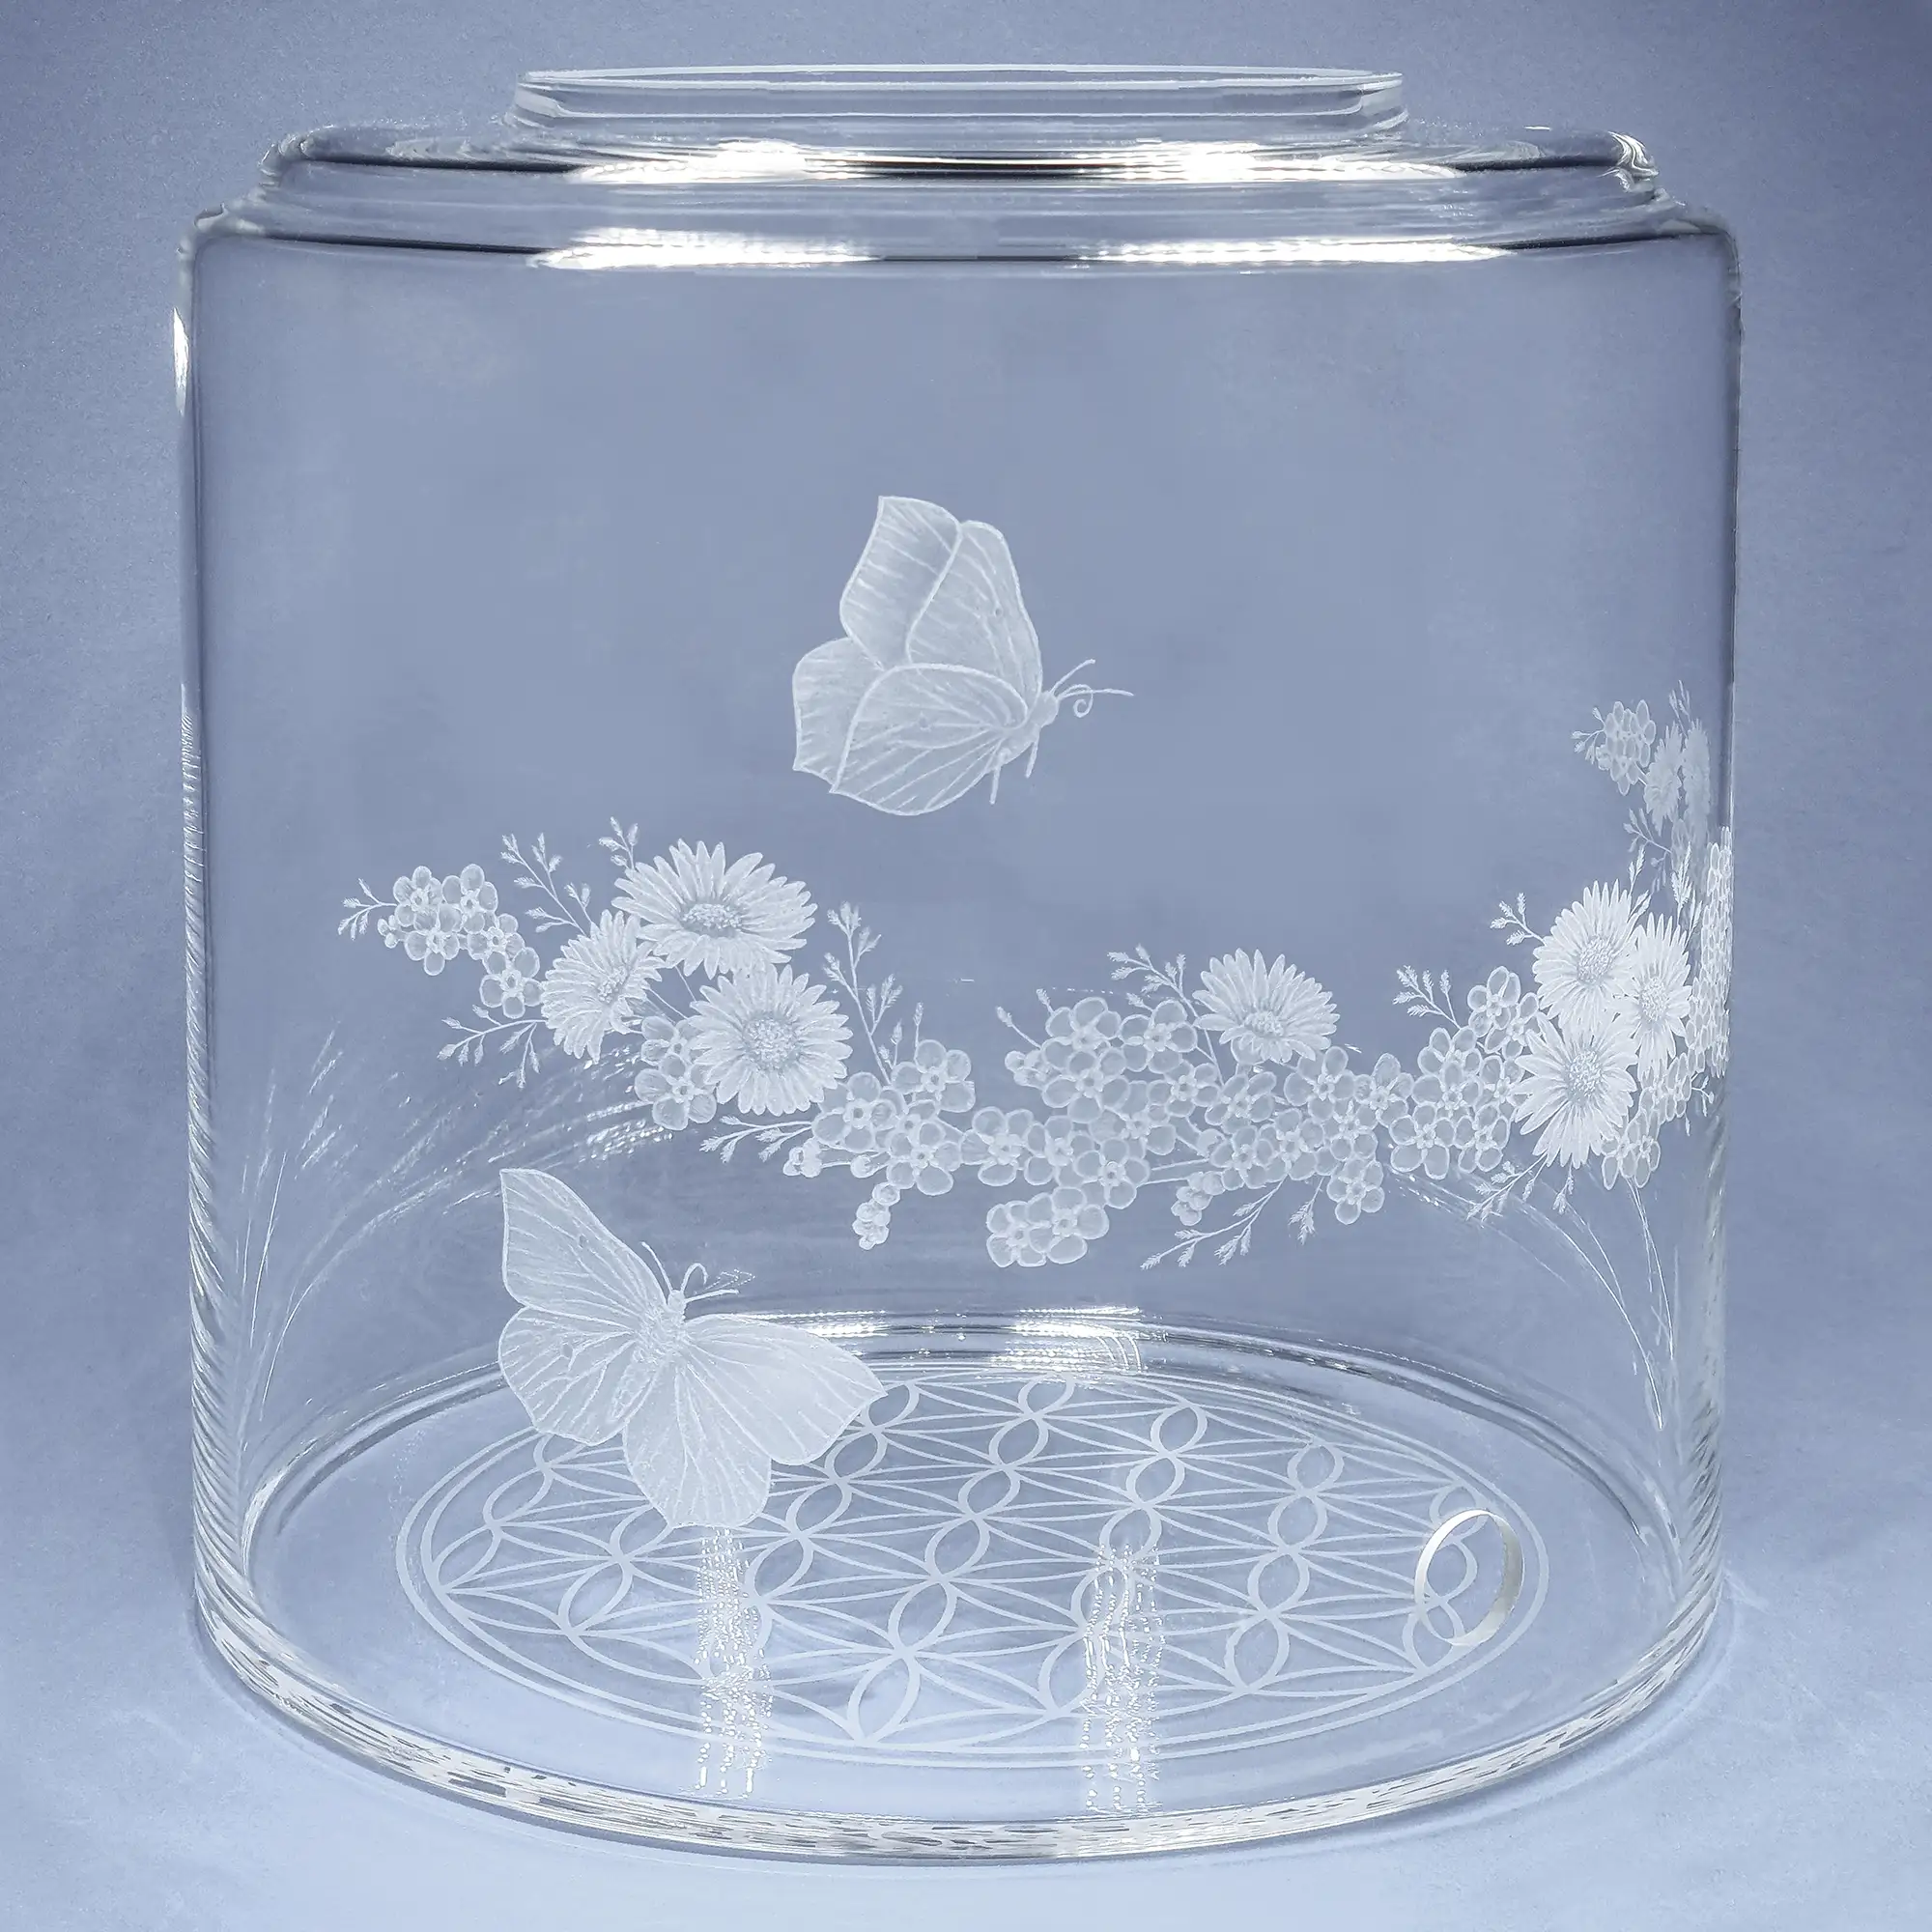 Vorratstank aus Glas für einen 8Liter Acala Wasserfilter in klarem Glas mit dem gravierten Kranz,umlaufende um das runde Glas.In dem Granz sind Vergissmeinnicht, Schmetterlinge und Gänseblümchen.Linke Ansicht.